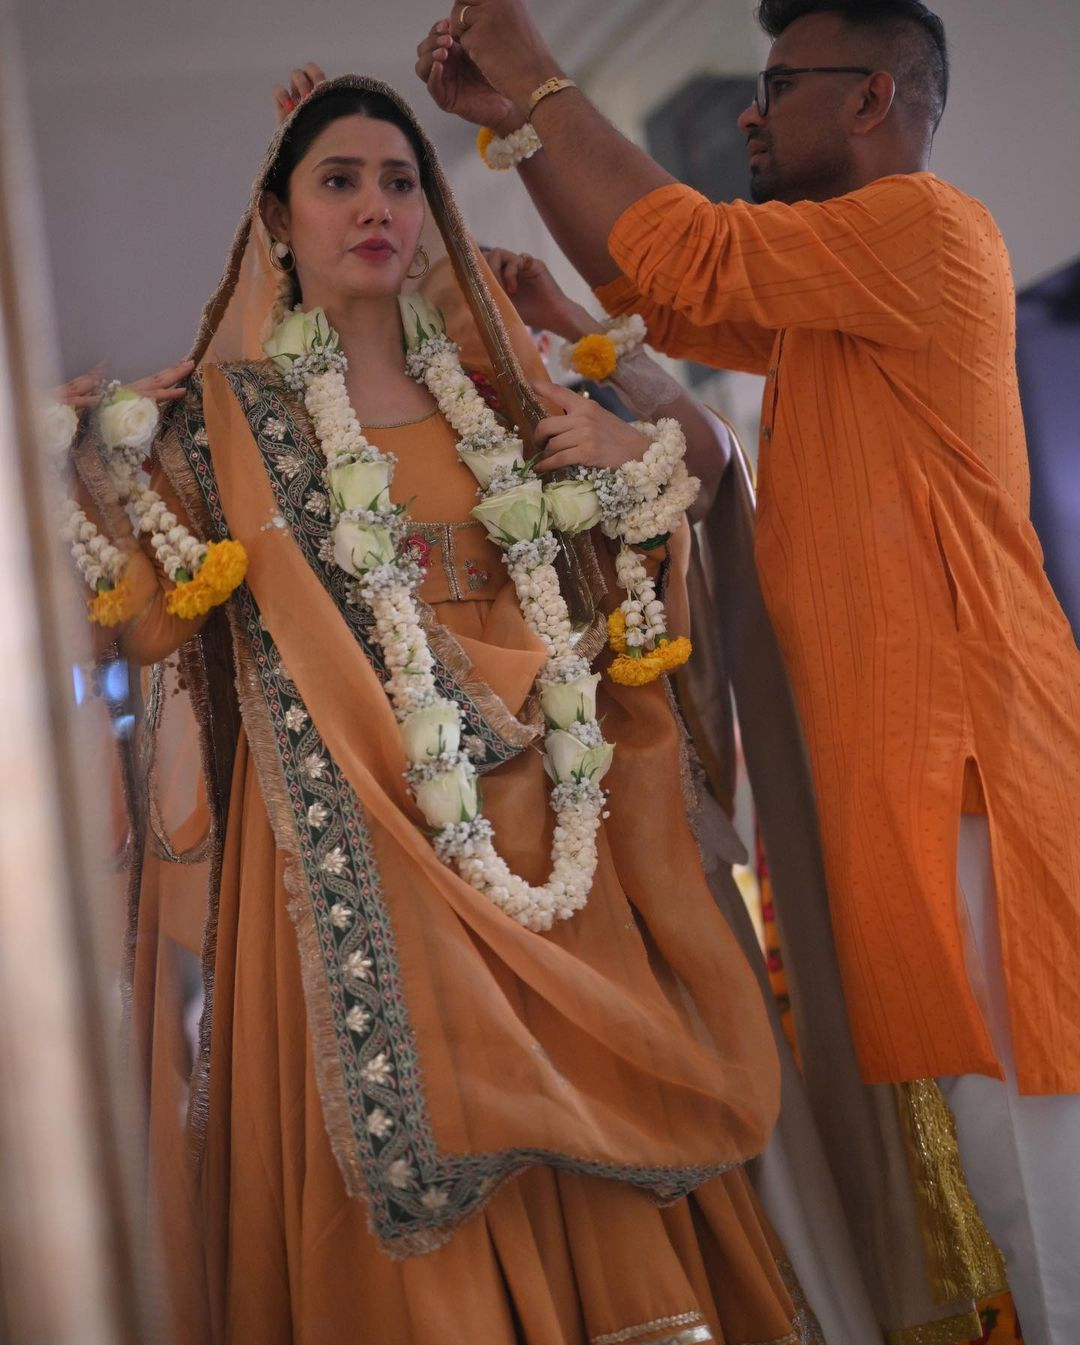 ماہرہ خان نے شادی کی تقریبات کی مزید تصاویر شیئر کر دیں
